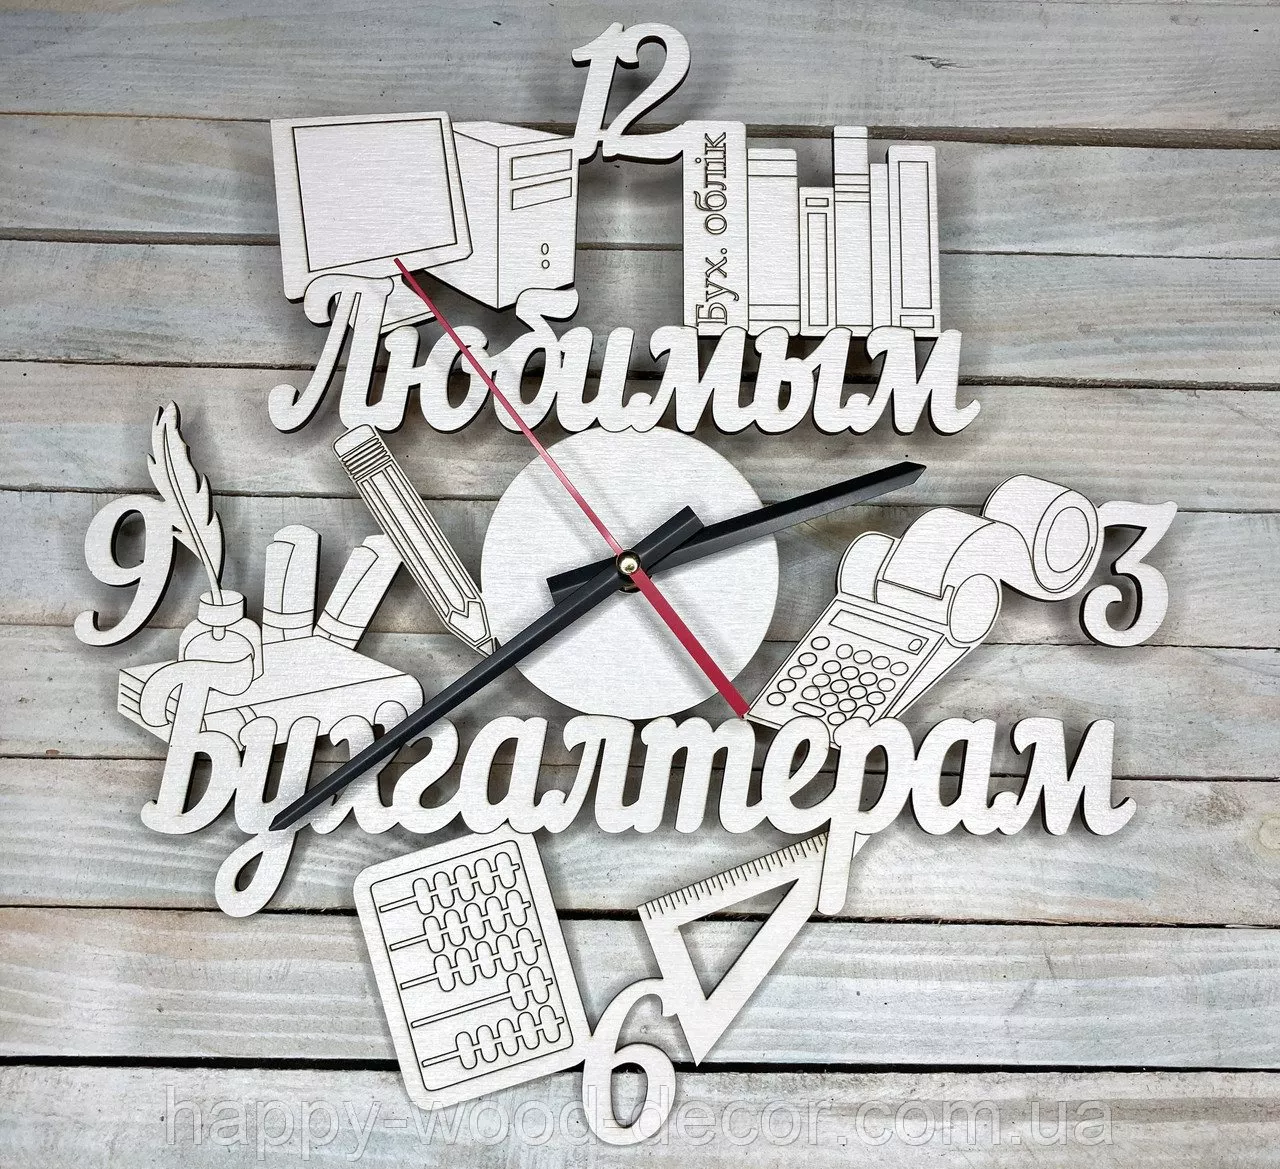 Годинники настінні "Улюбленим бухгалтерам", 420 грн. / Фото: prom.ua 